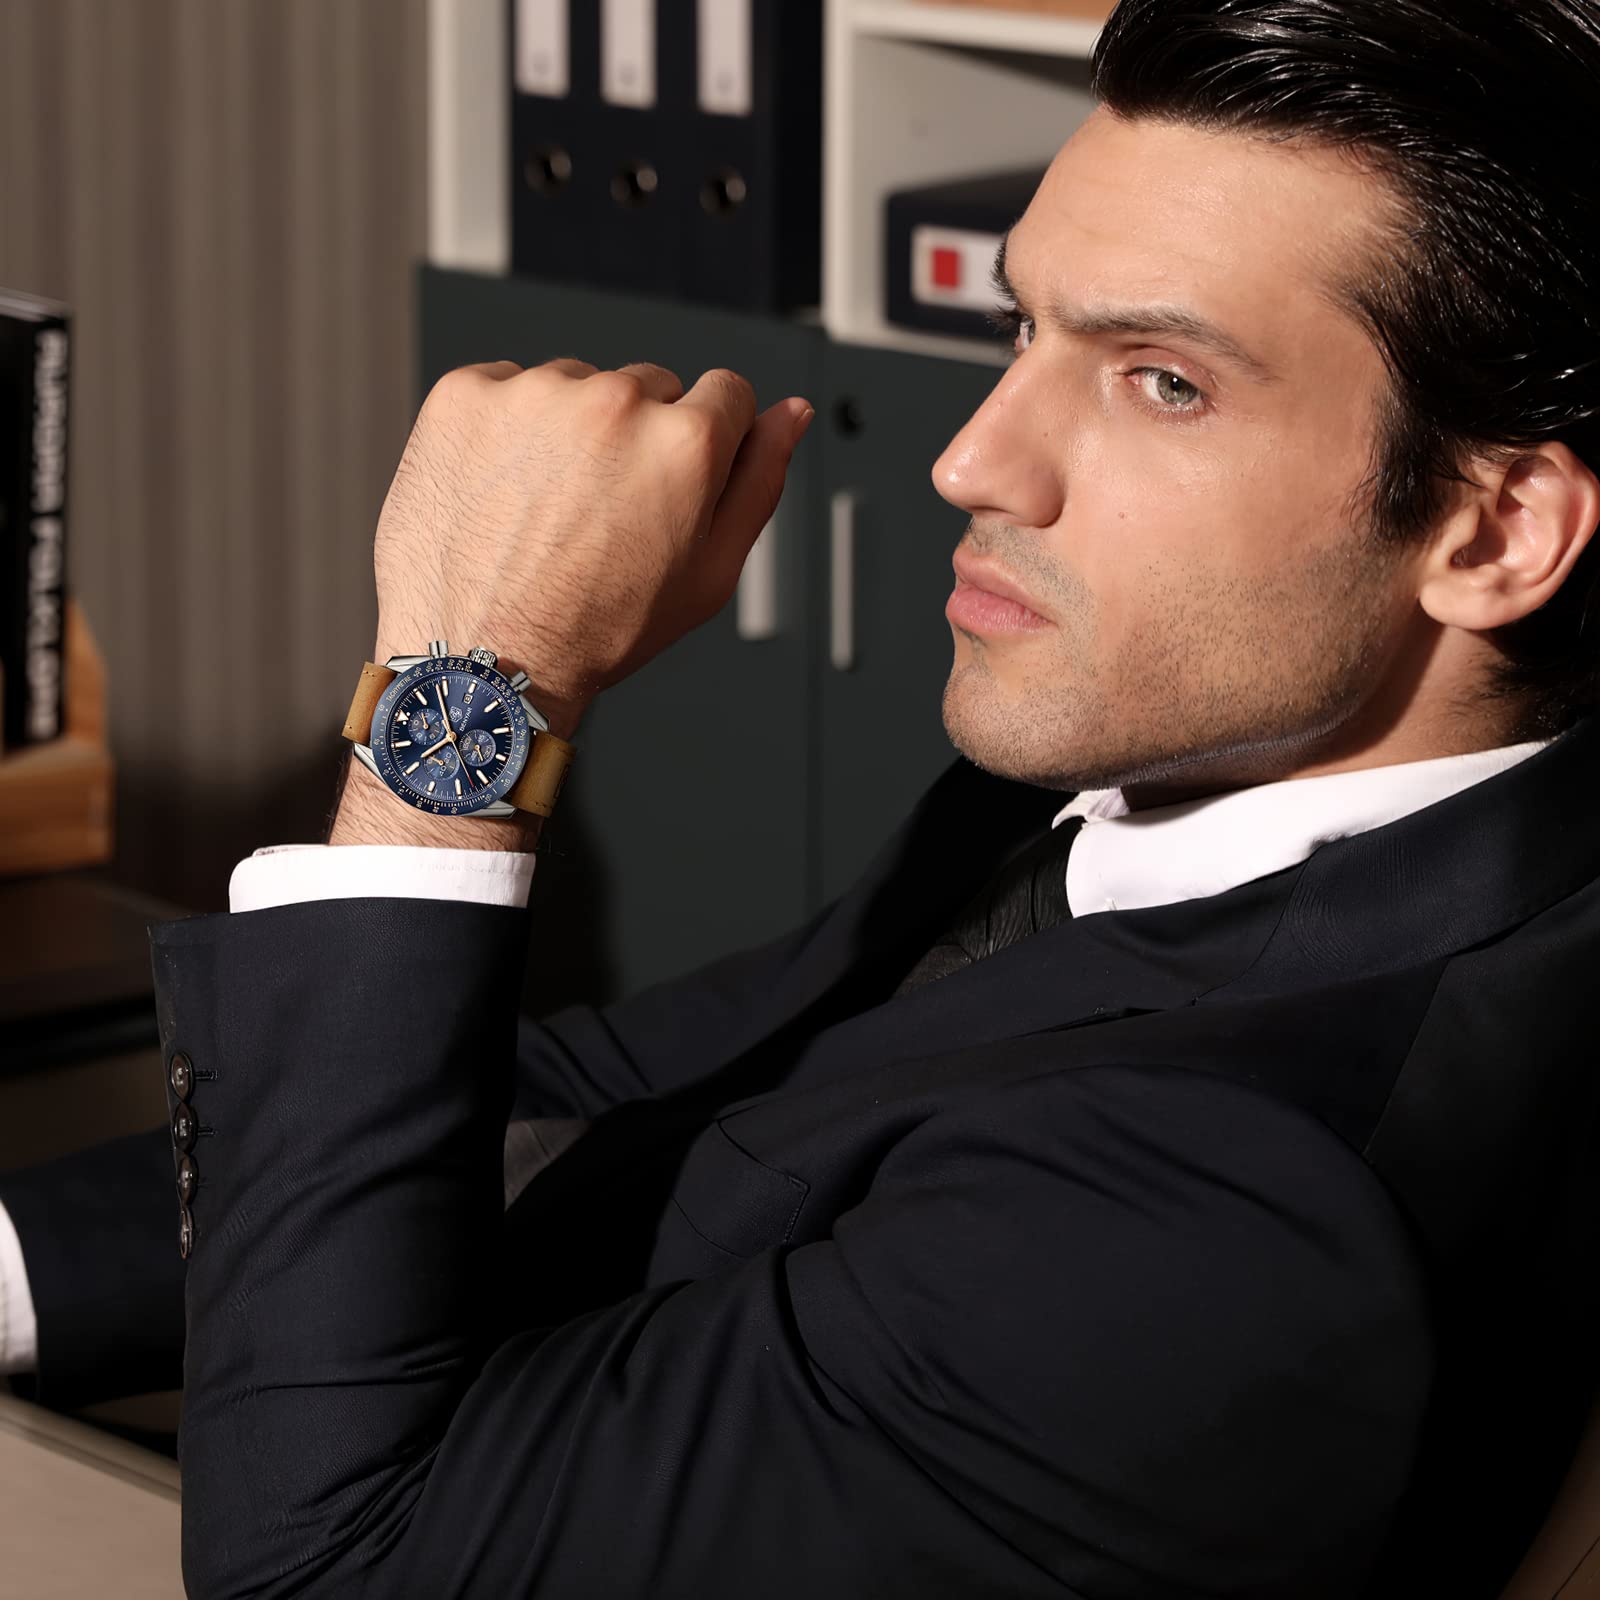 BENYAR herrenuhren Chronograph Analogue Quartz Armbanduhr für männer Lederband Herren Fashion Business Sport Design 30M wasserdicht Elegantes Geschenk für männer